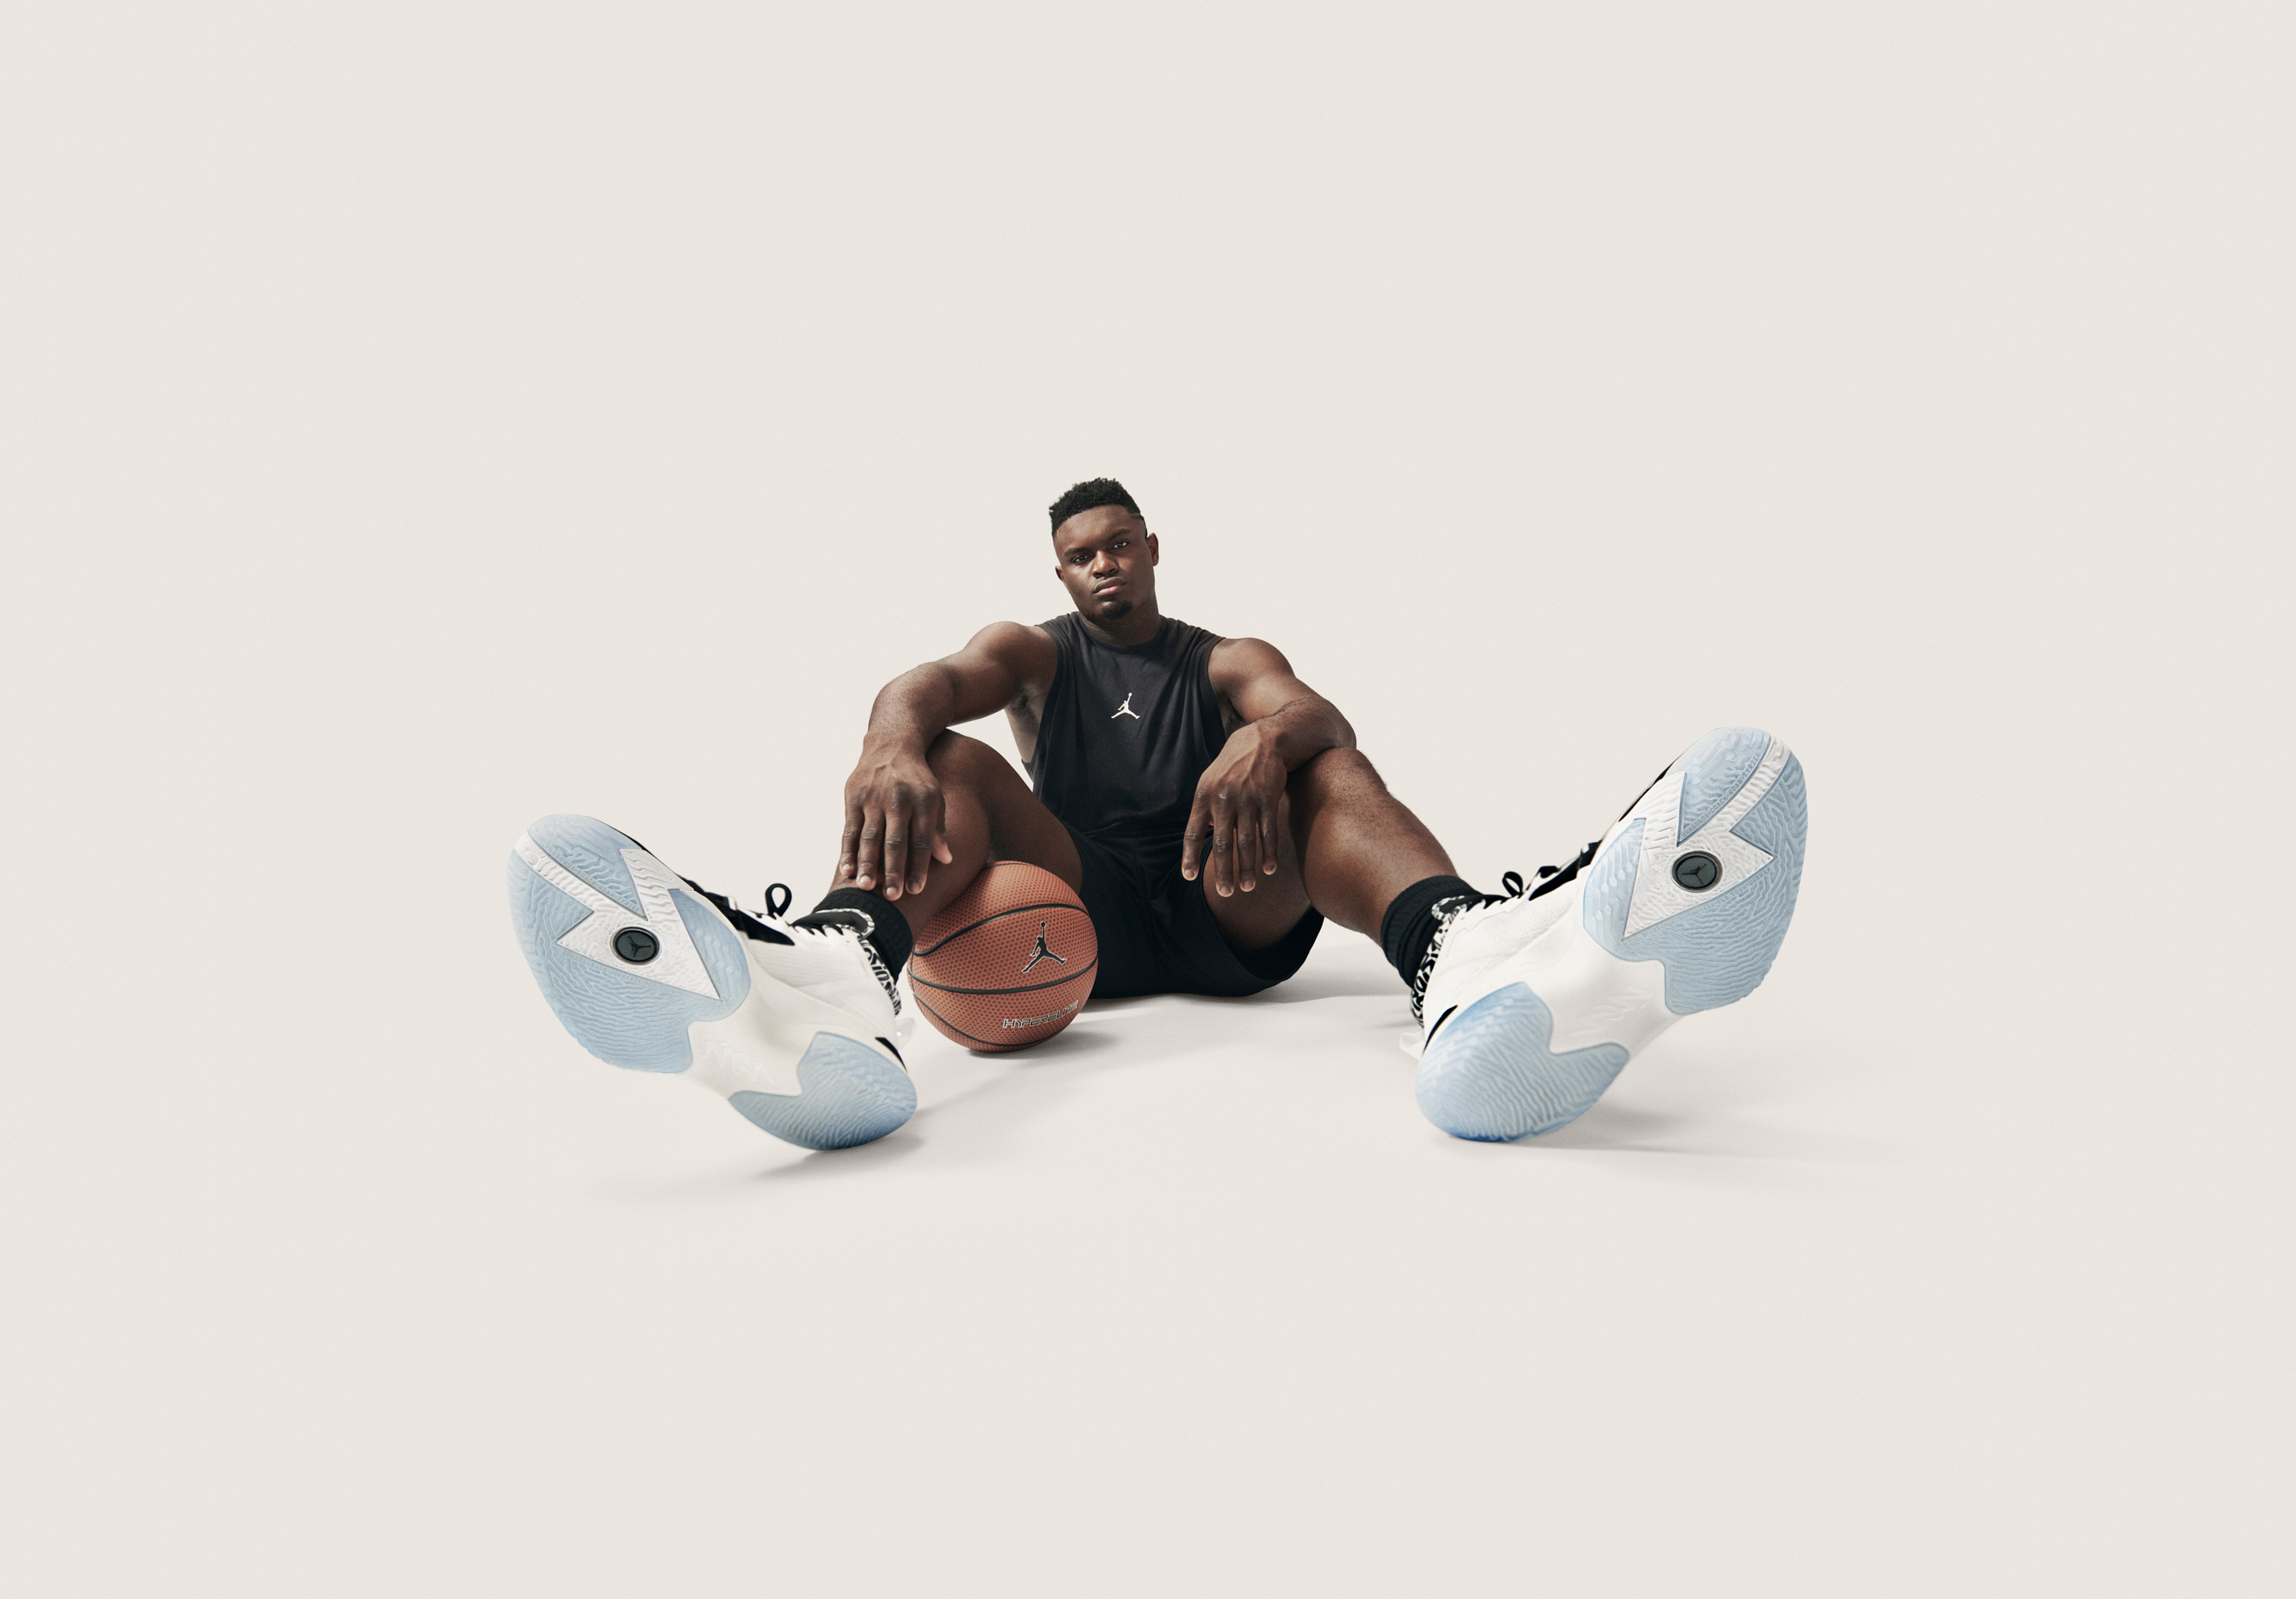 Jordan Brand Unveils Zion Williamson Signature Shoe, The Zion 1 [Photos]